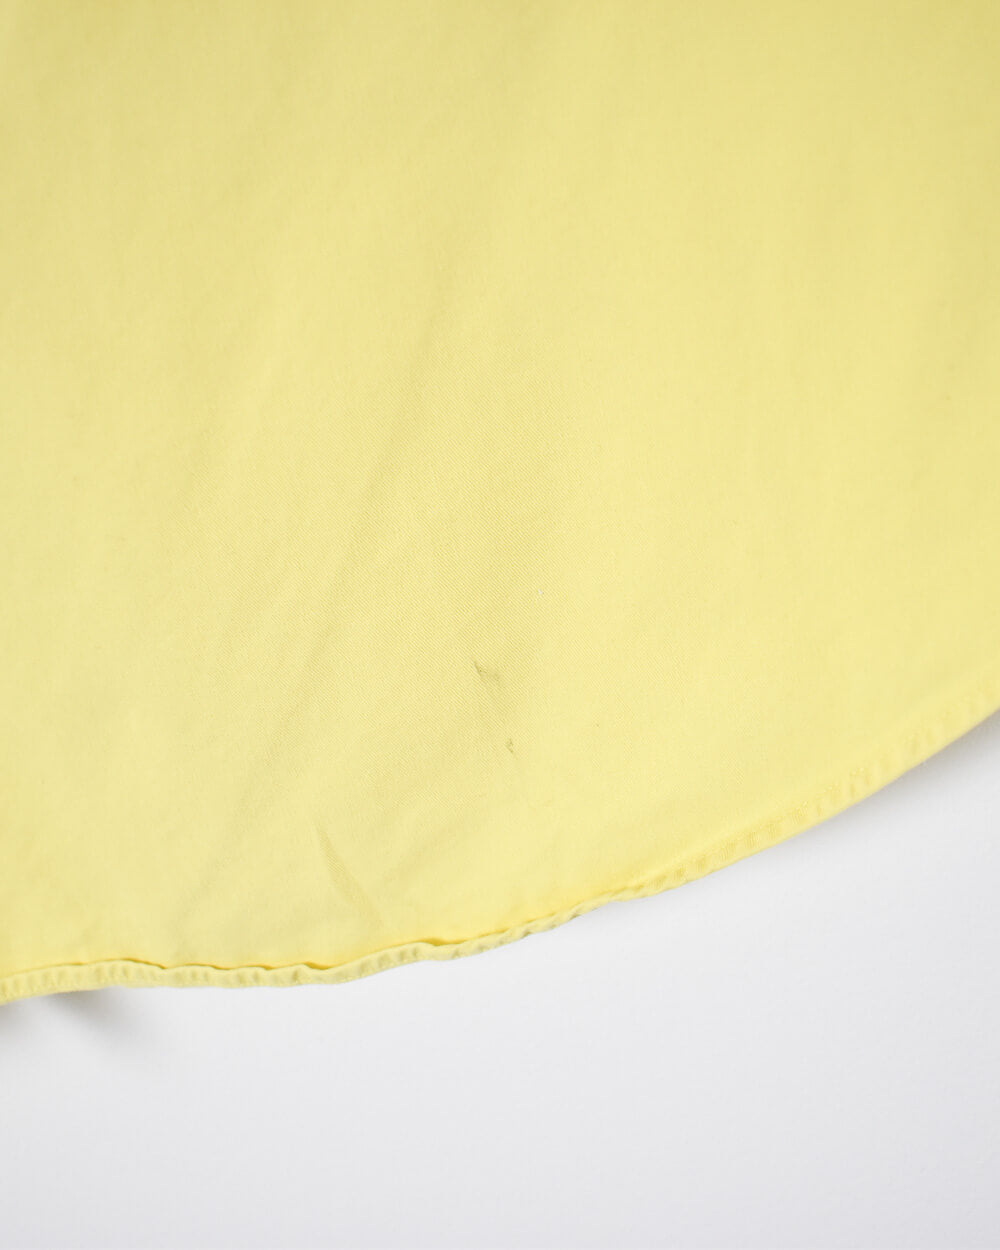 Yellow Ralph Lauren  Short Sleeved Shirt - XX-Large